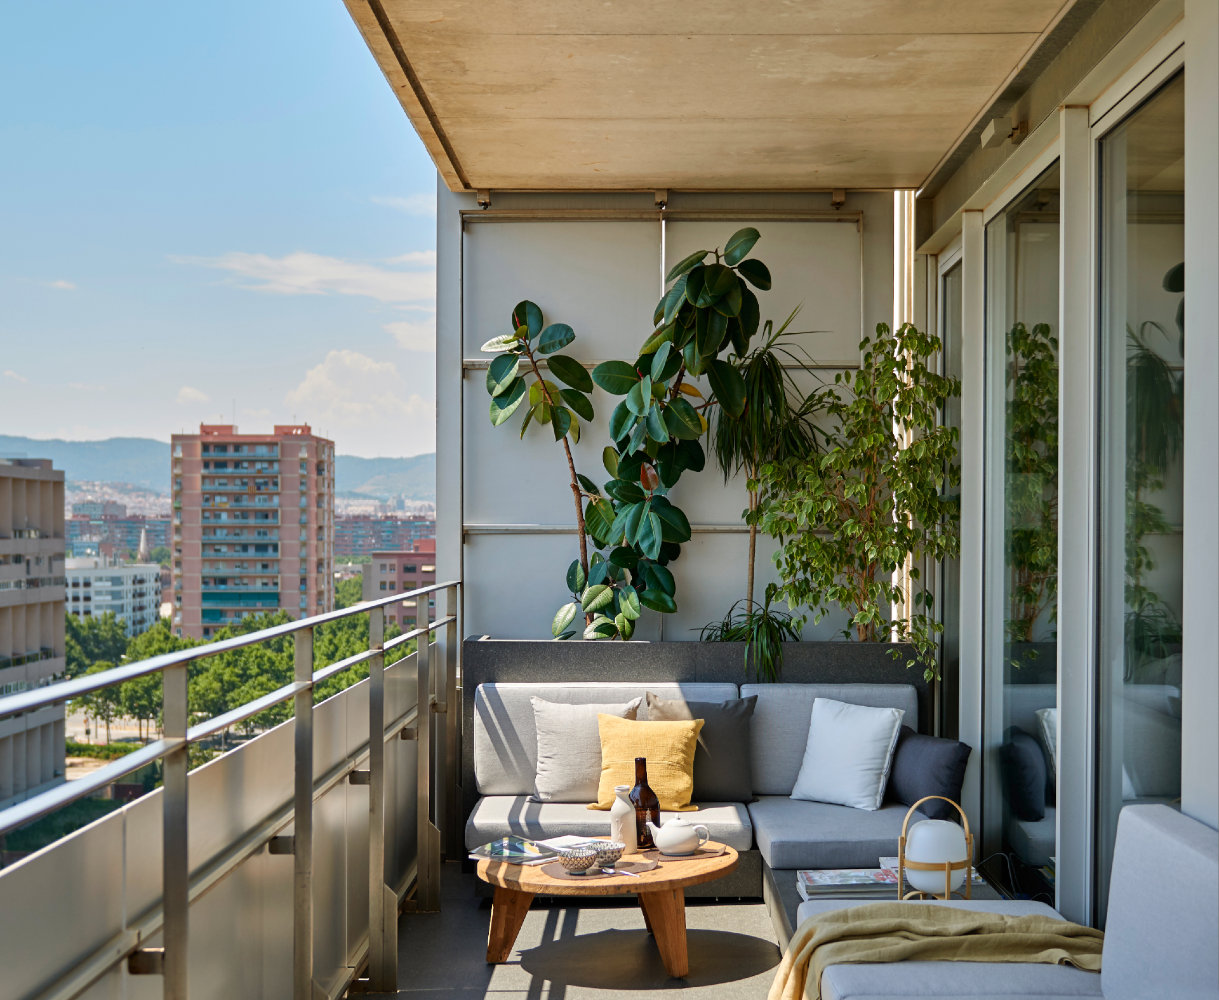 Las terrazas permiten tener un salón al aire libre